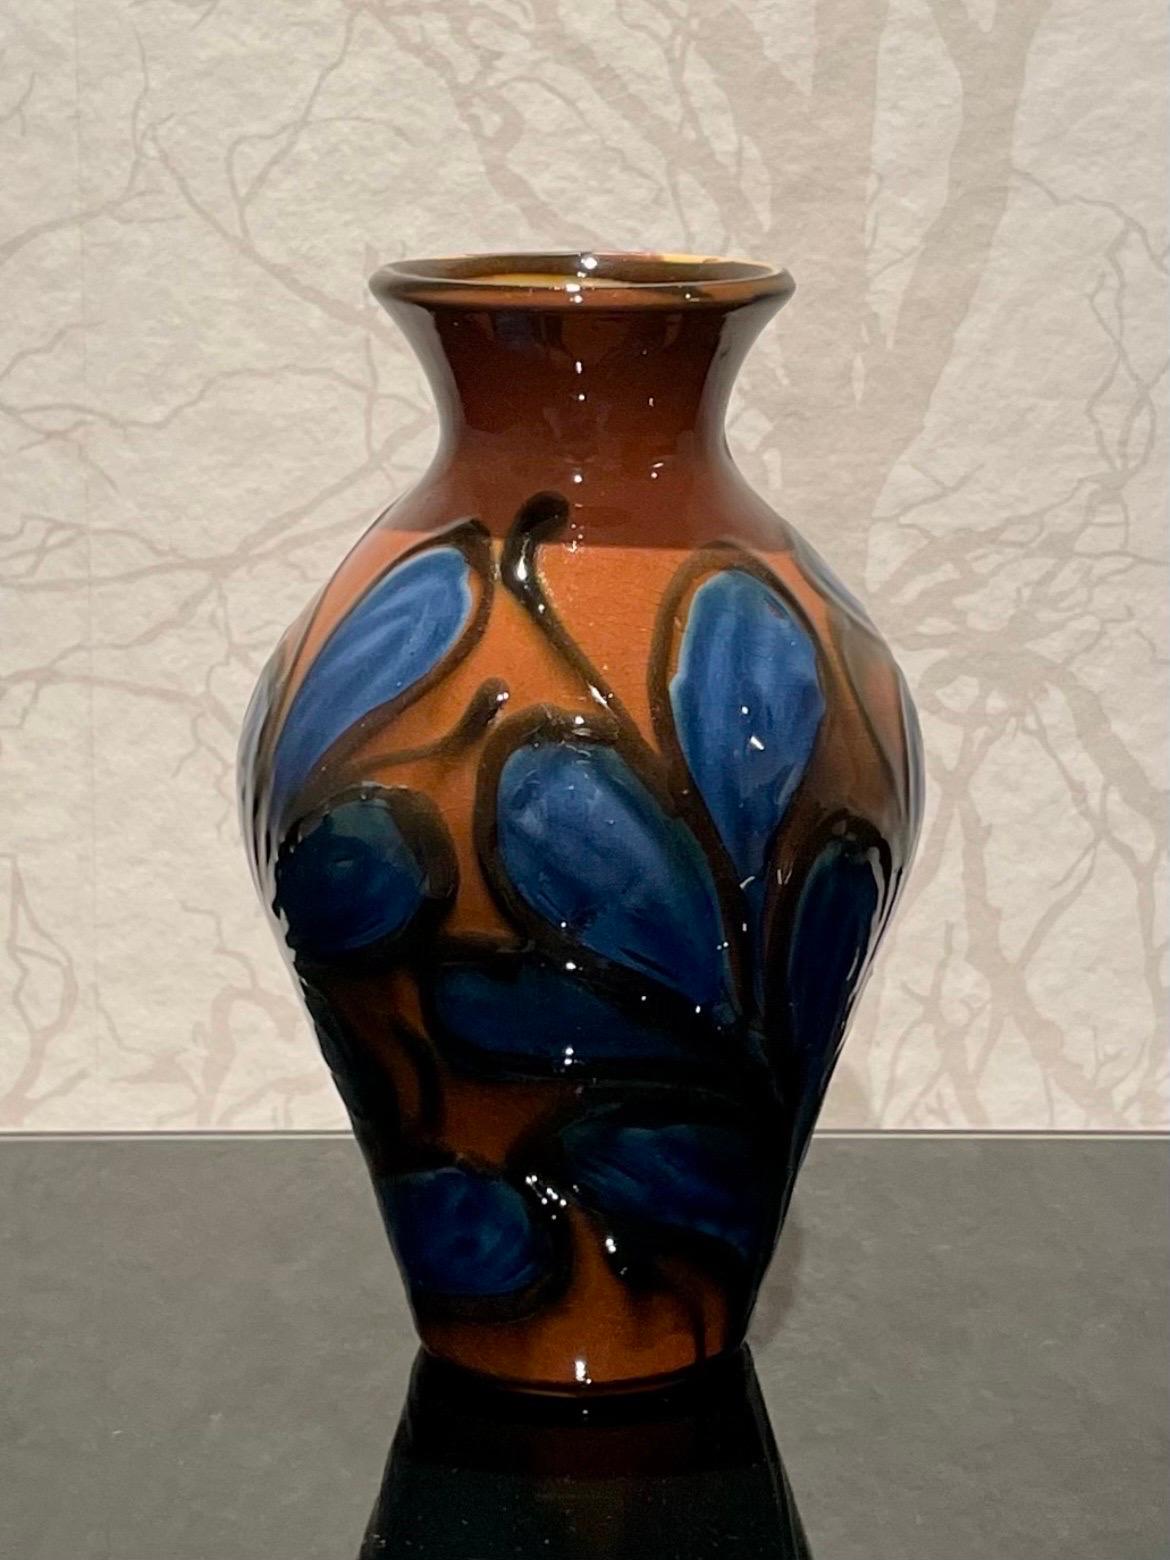 Il s'agit d'un vase danois en céramique des années 1920, d'une hauteur de 22 cm, réalisé par Herman Kähler. 

Il est doté d'un corps en forme de balustre et d'une surface brillante. Il présente un magnifique motif glacé en corne de vache dans des